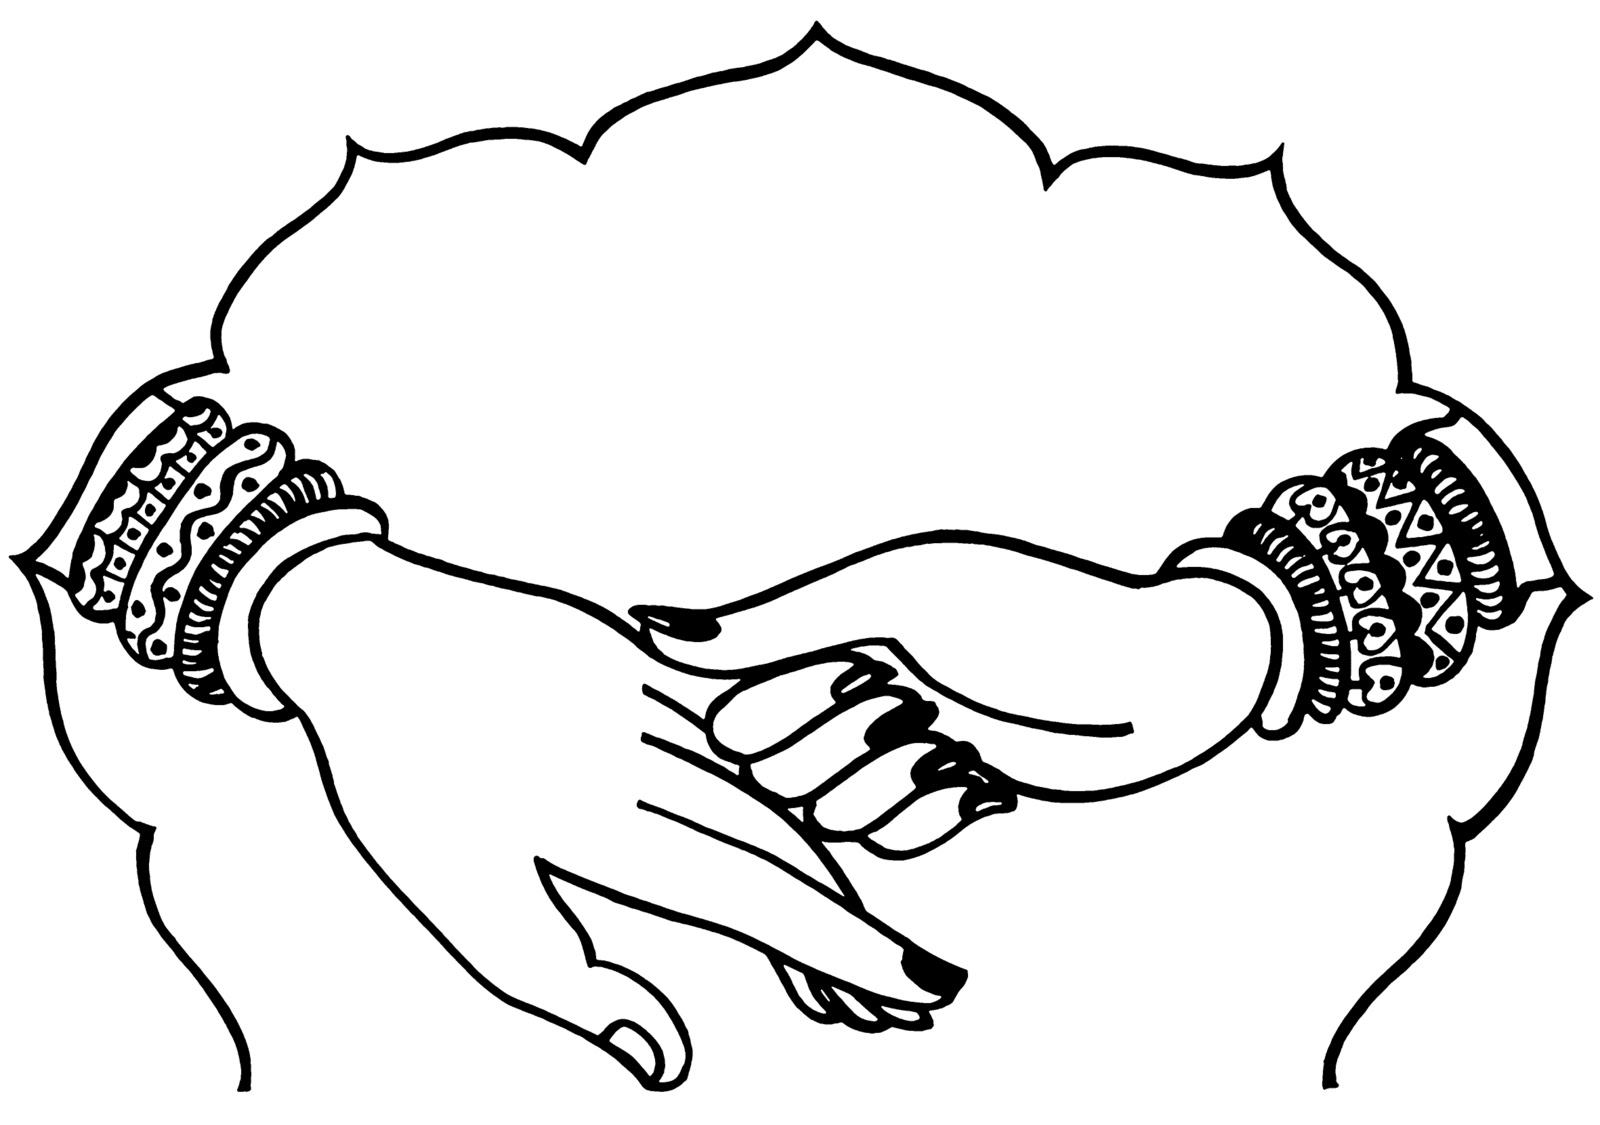 Indian wedding hands.